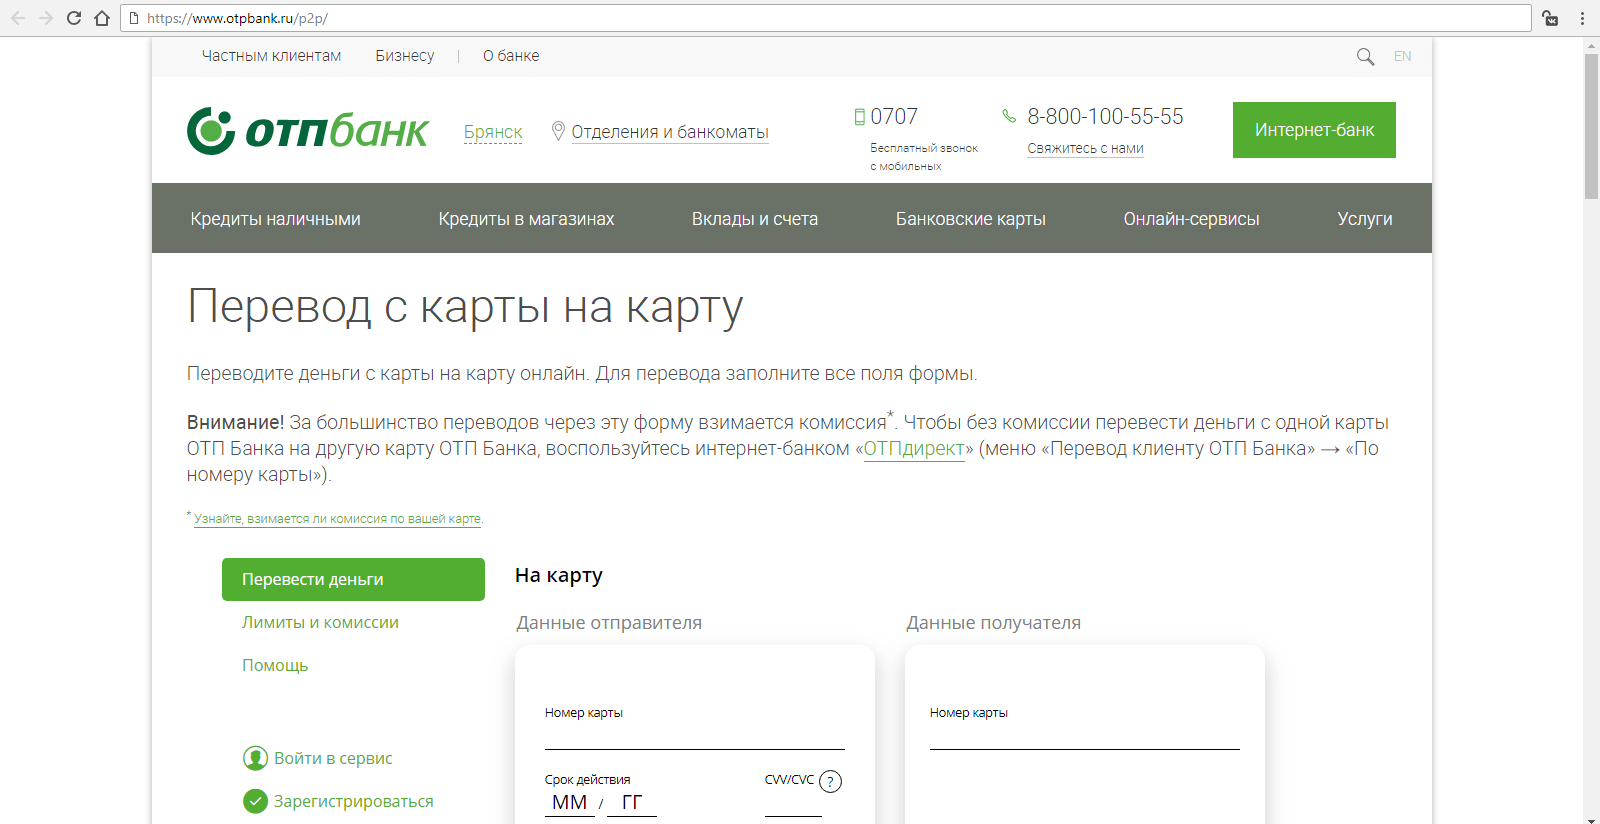 Как проверить баланс карты отп банка онлайн украина